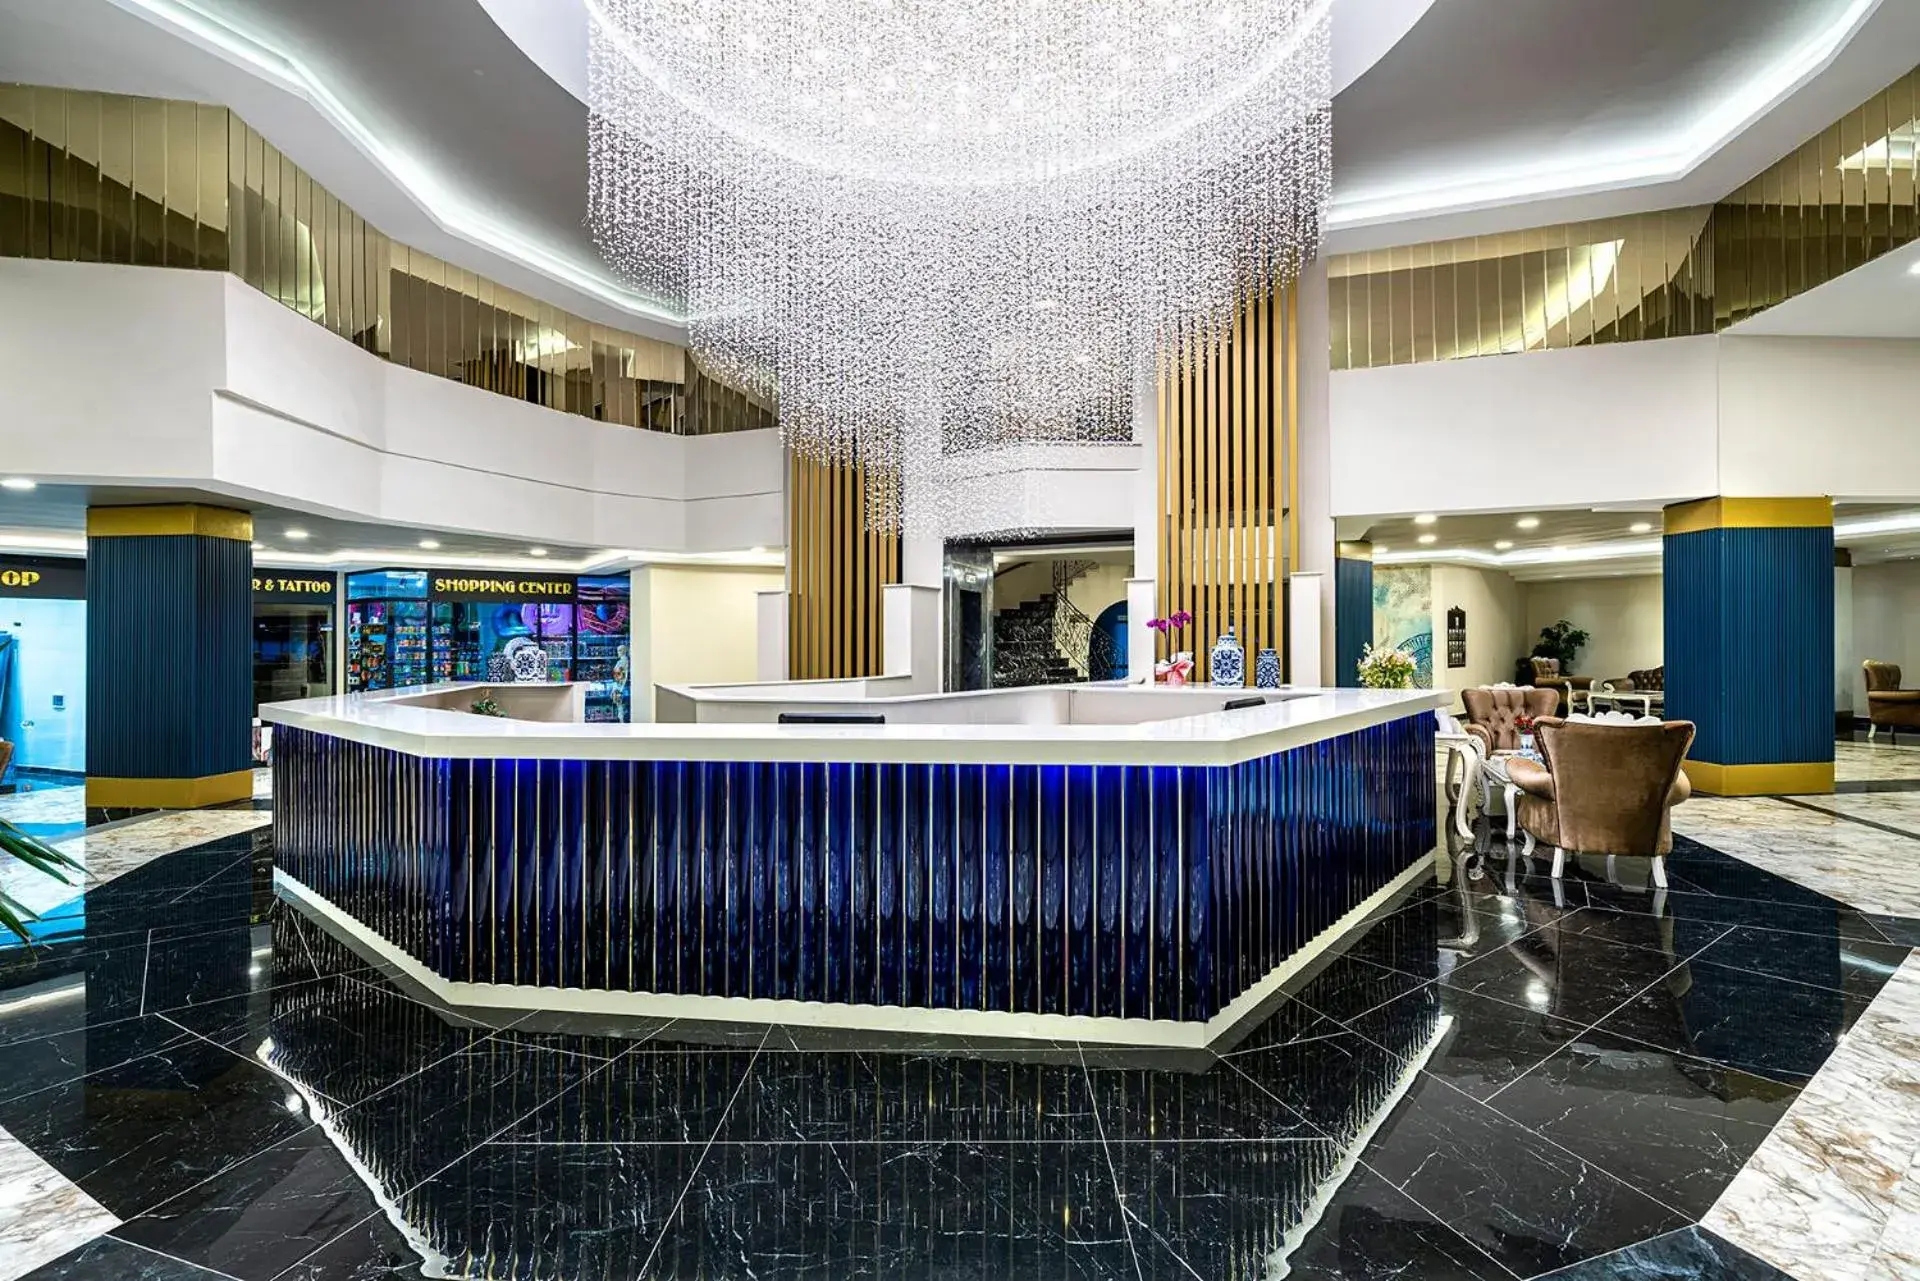 Lobby or reception in Blue Star Hotel